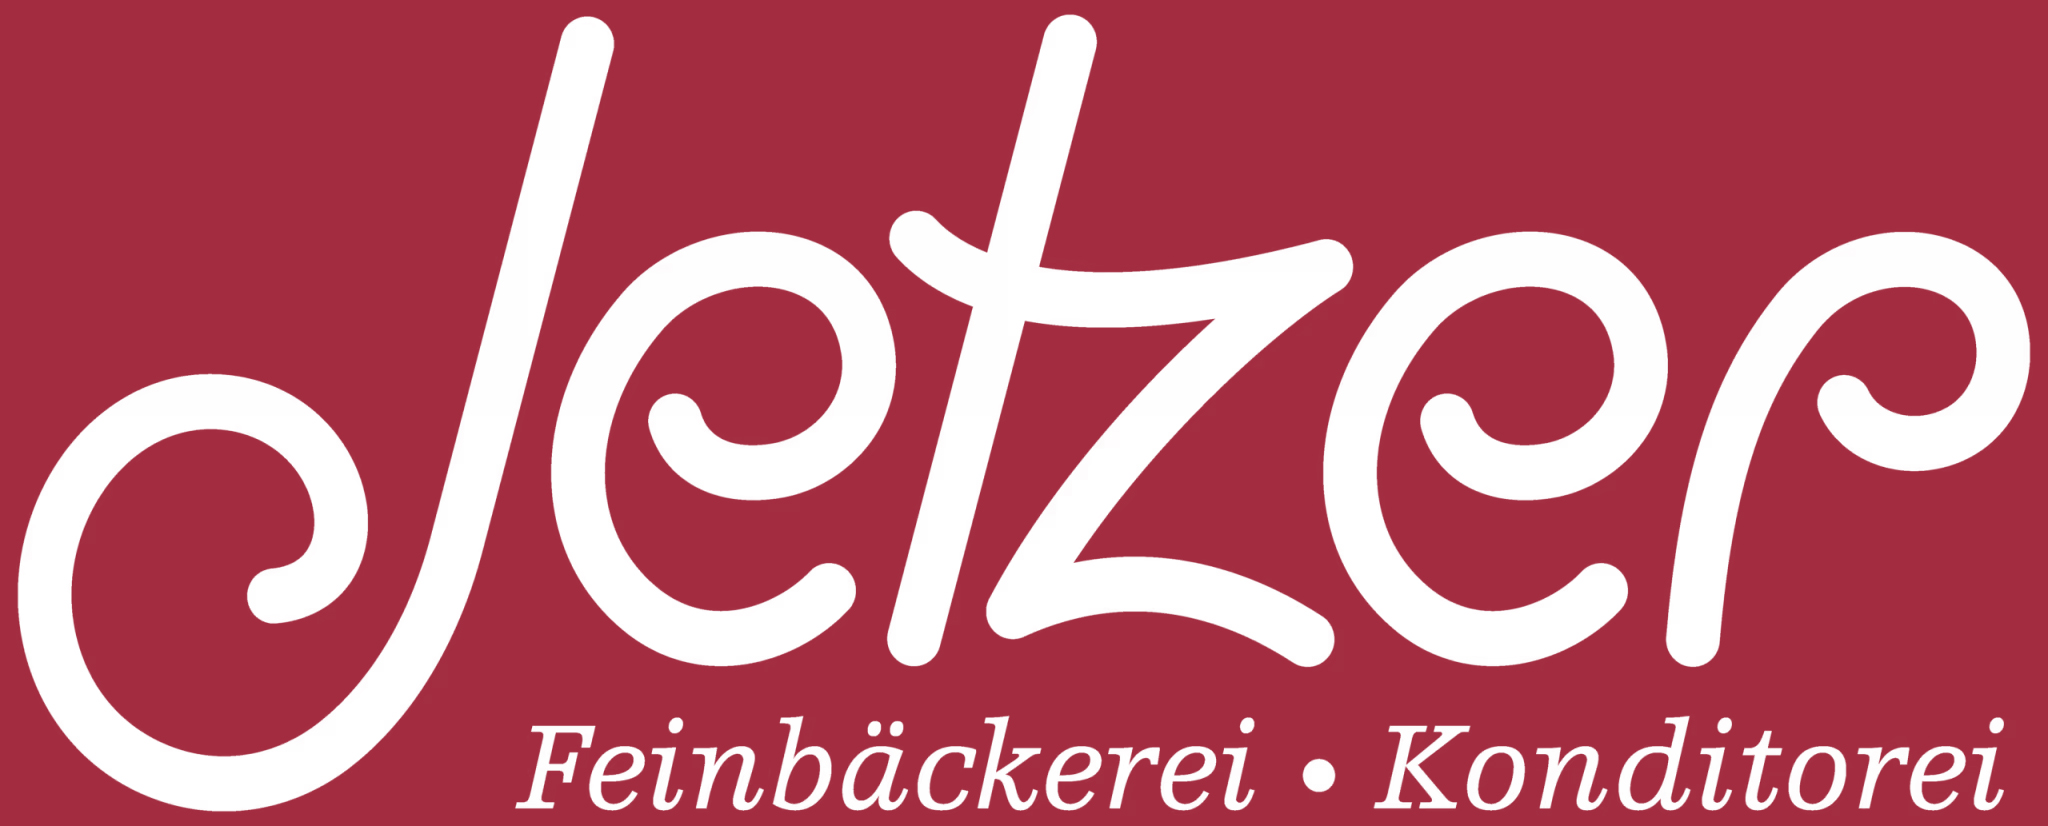 Logo Jetzerbegg